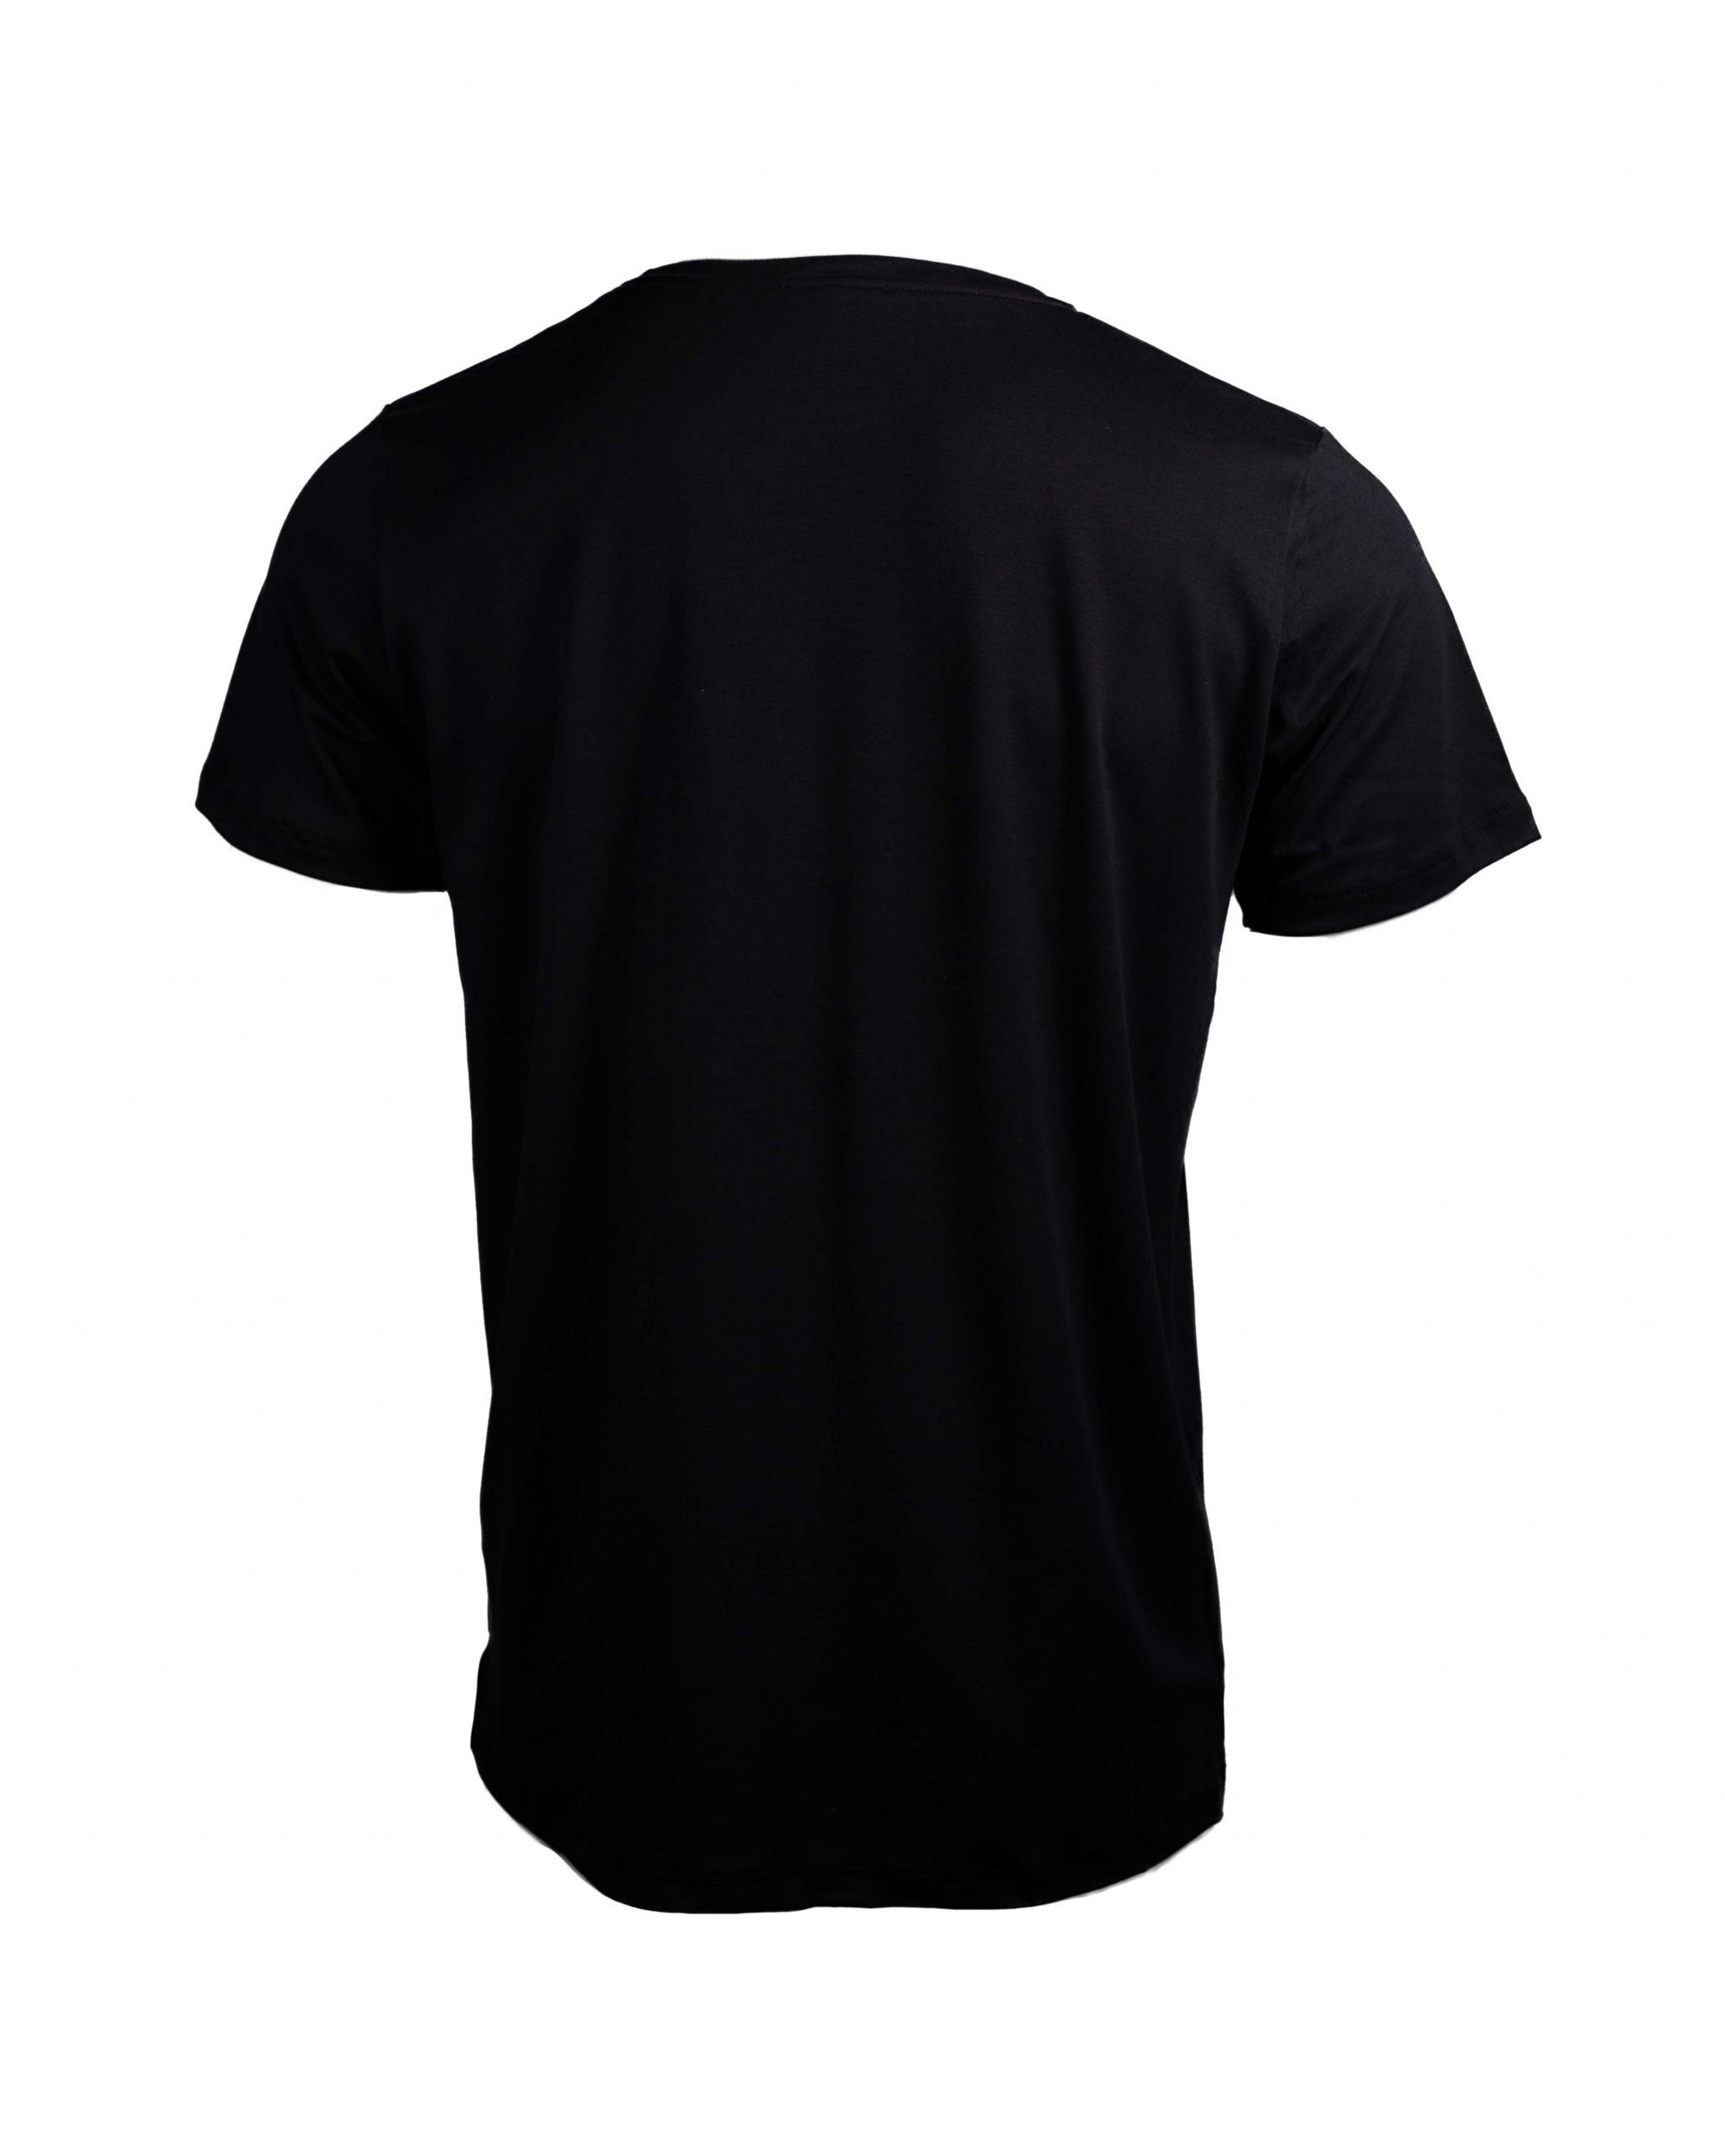 BASIC an SHIRT EMPIRE-THIRTEEN hinten schwarz den "EMPIRE" vorne T-Shirt T-Shirt, Seiten, Schlitze Logostickerei, als länger MEN